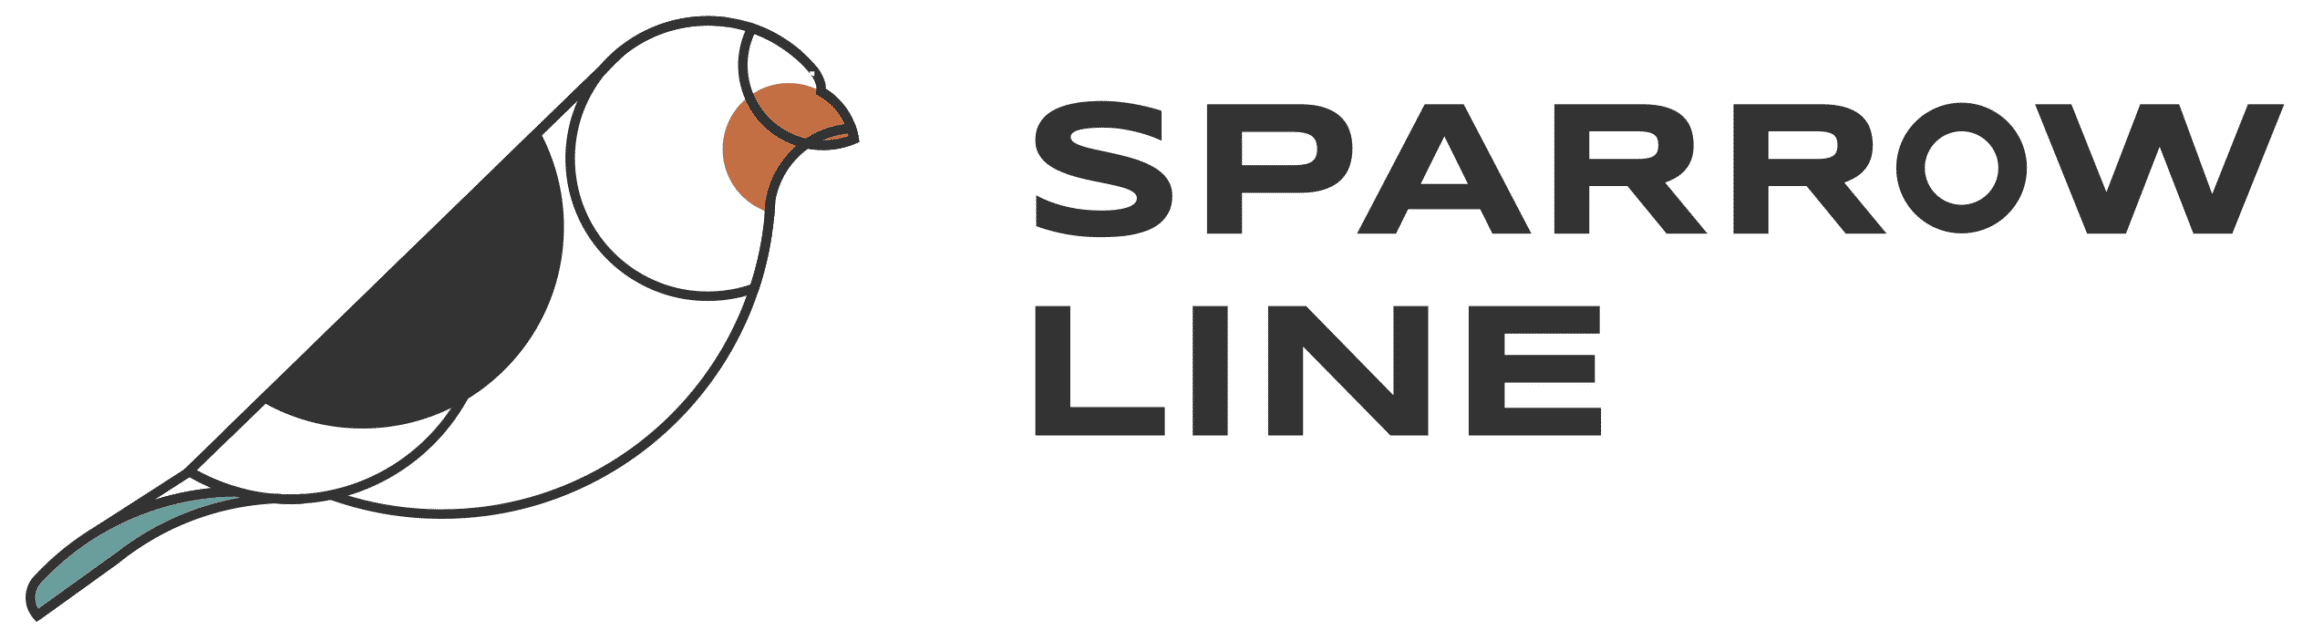 Sparrow Line